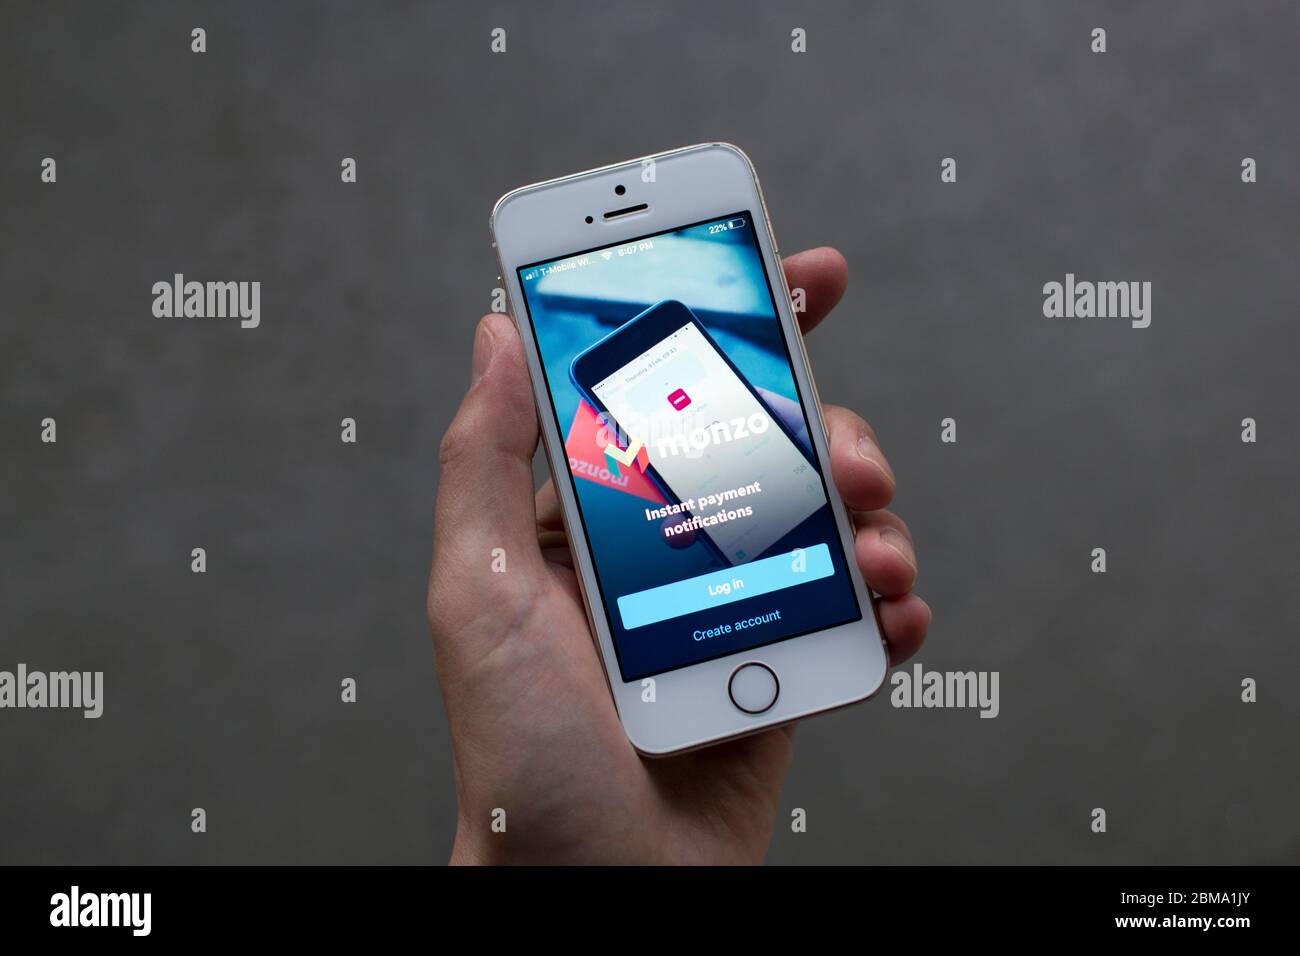 Page de connexion à l'application Monzo affichée sur un iPhone. Monzo Bank est une banque en ligne et a été l'une des premières banques de challenger basées sur des applications au Royaume-Uni. Banque D'Images